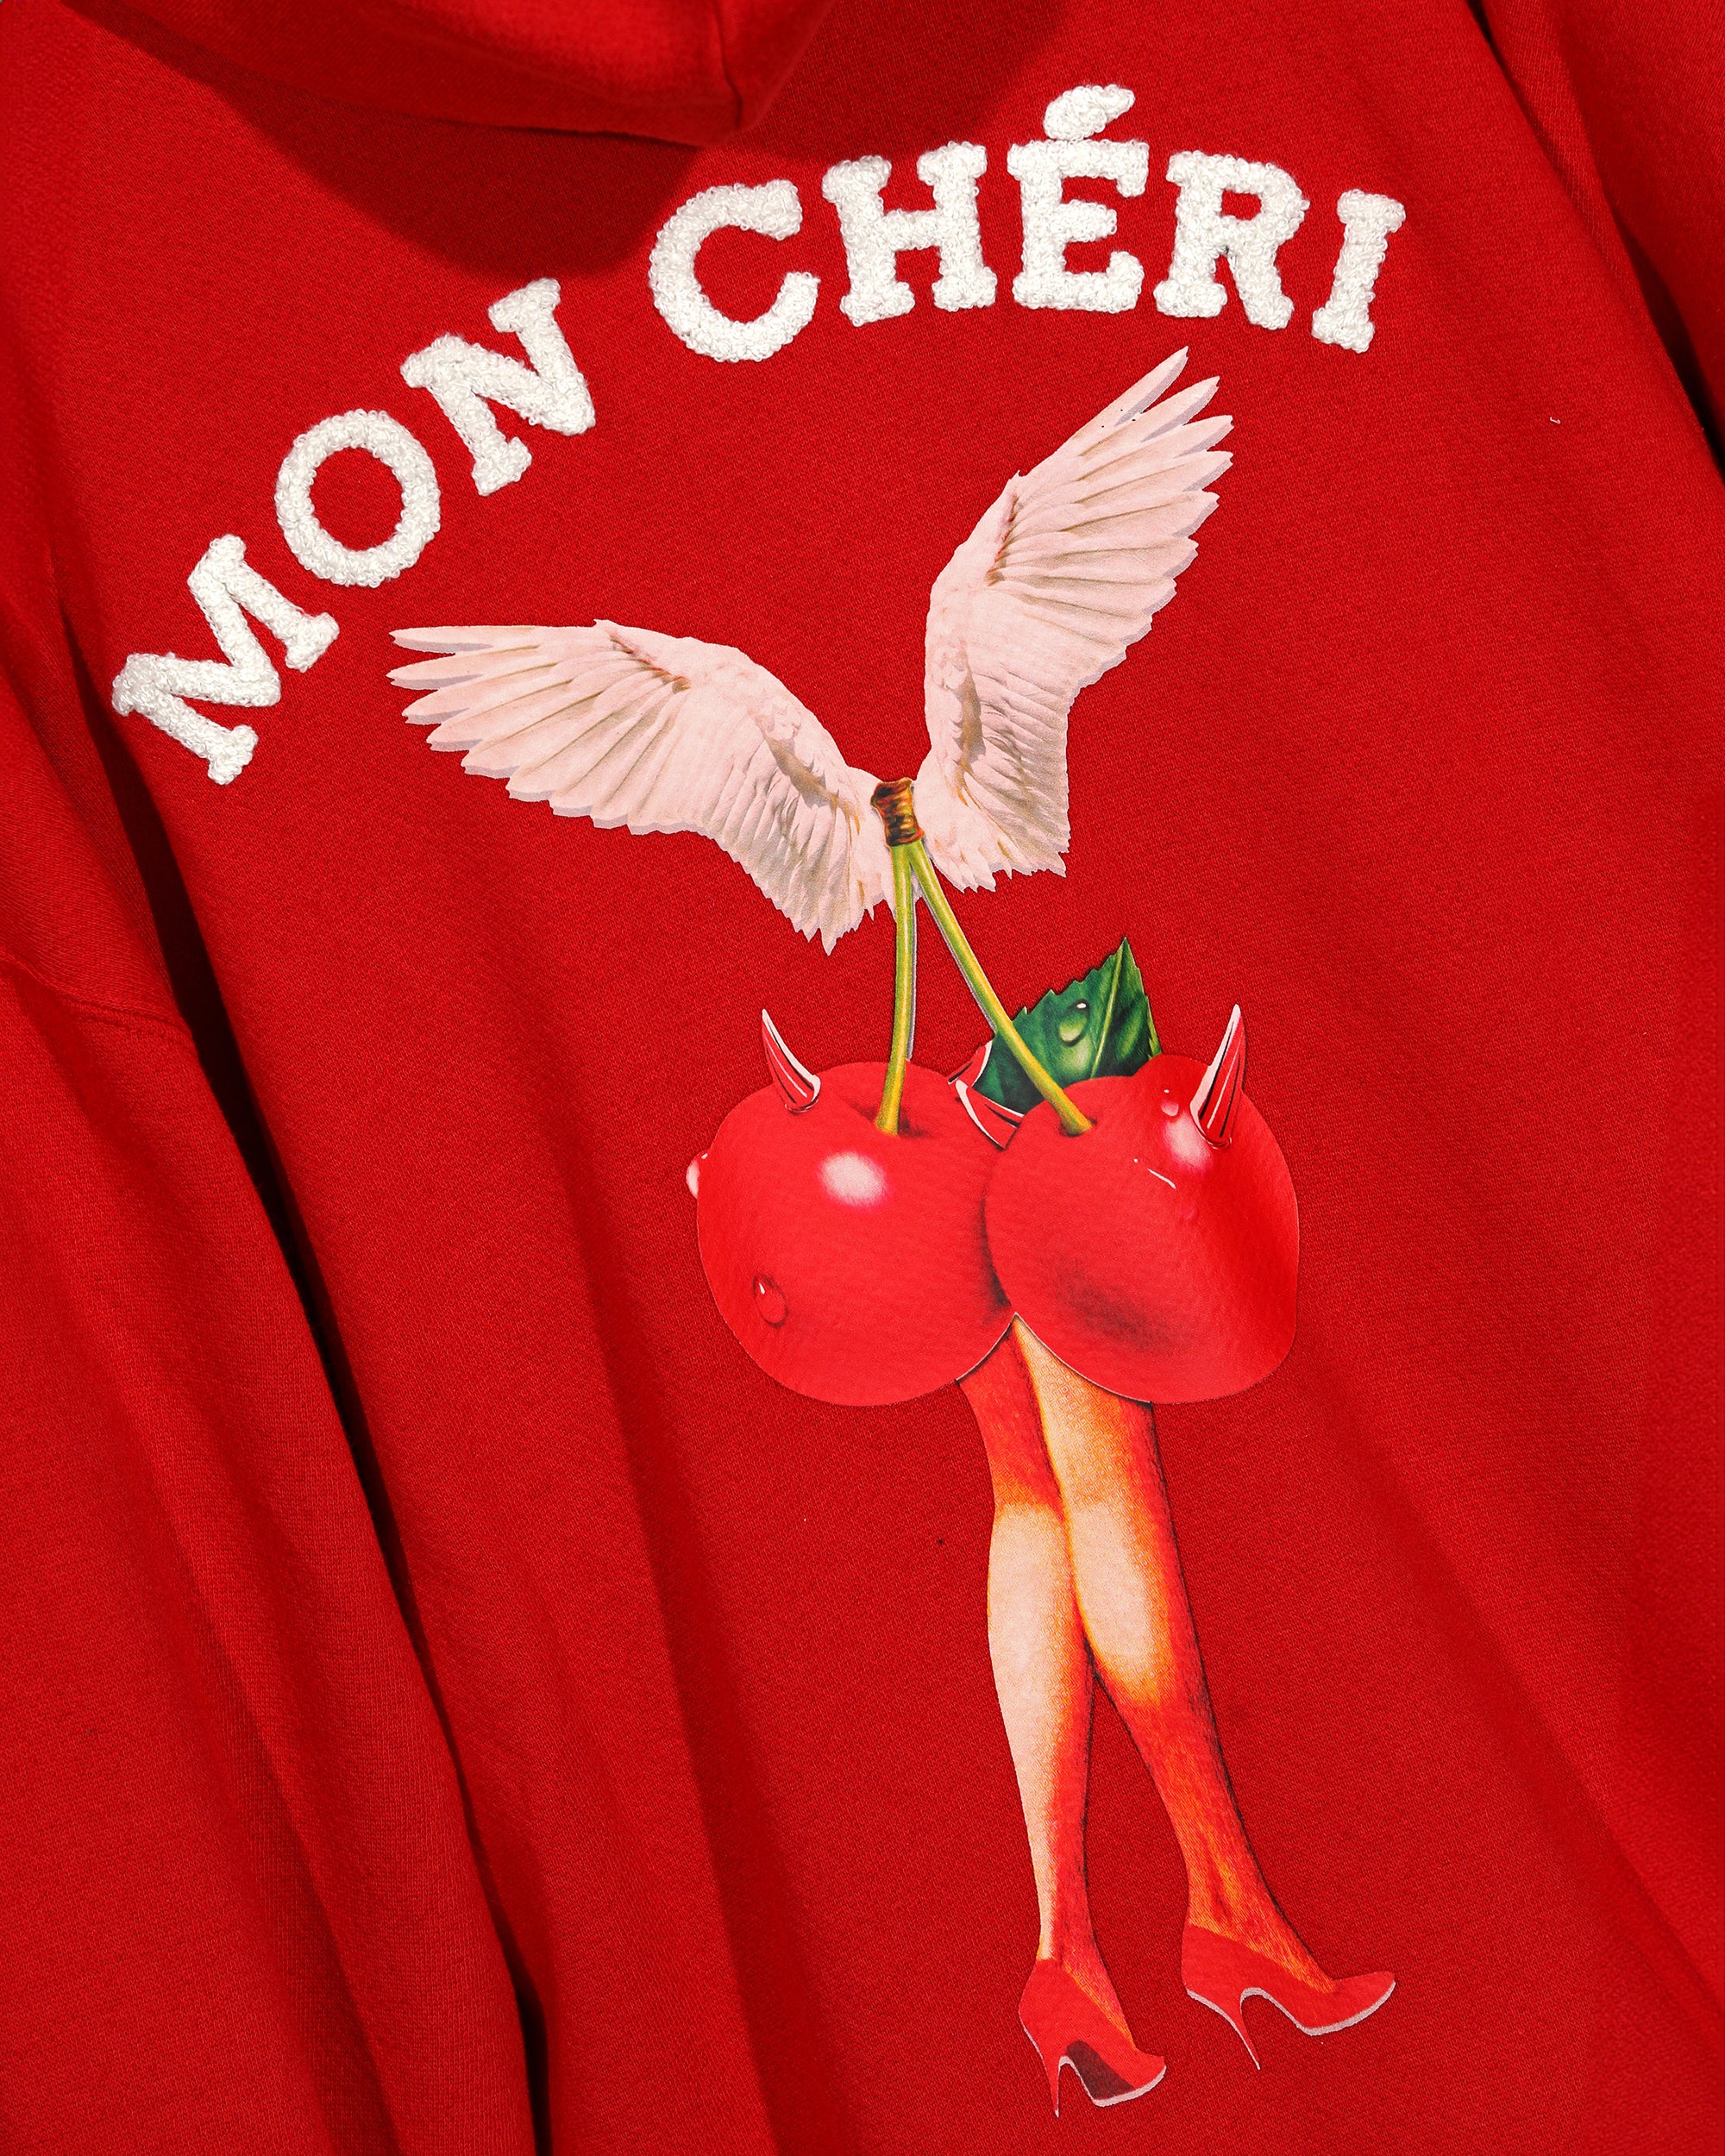 Cherry Picker Harley Hoodie